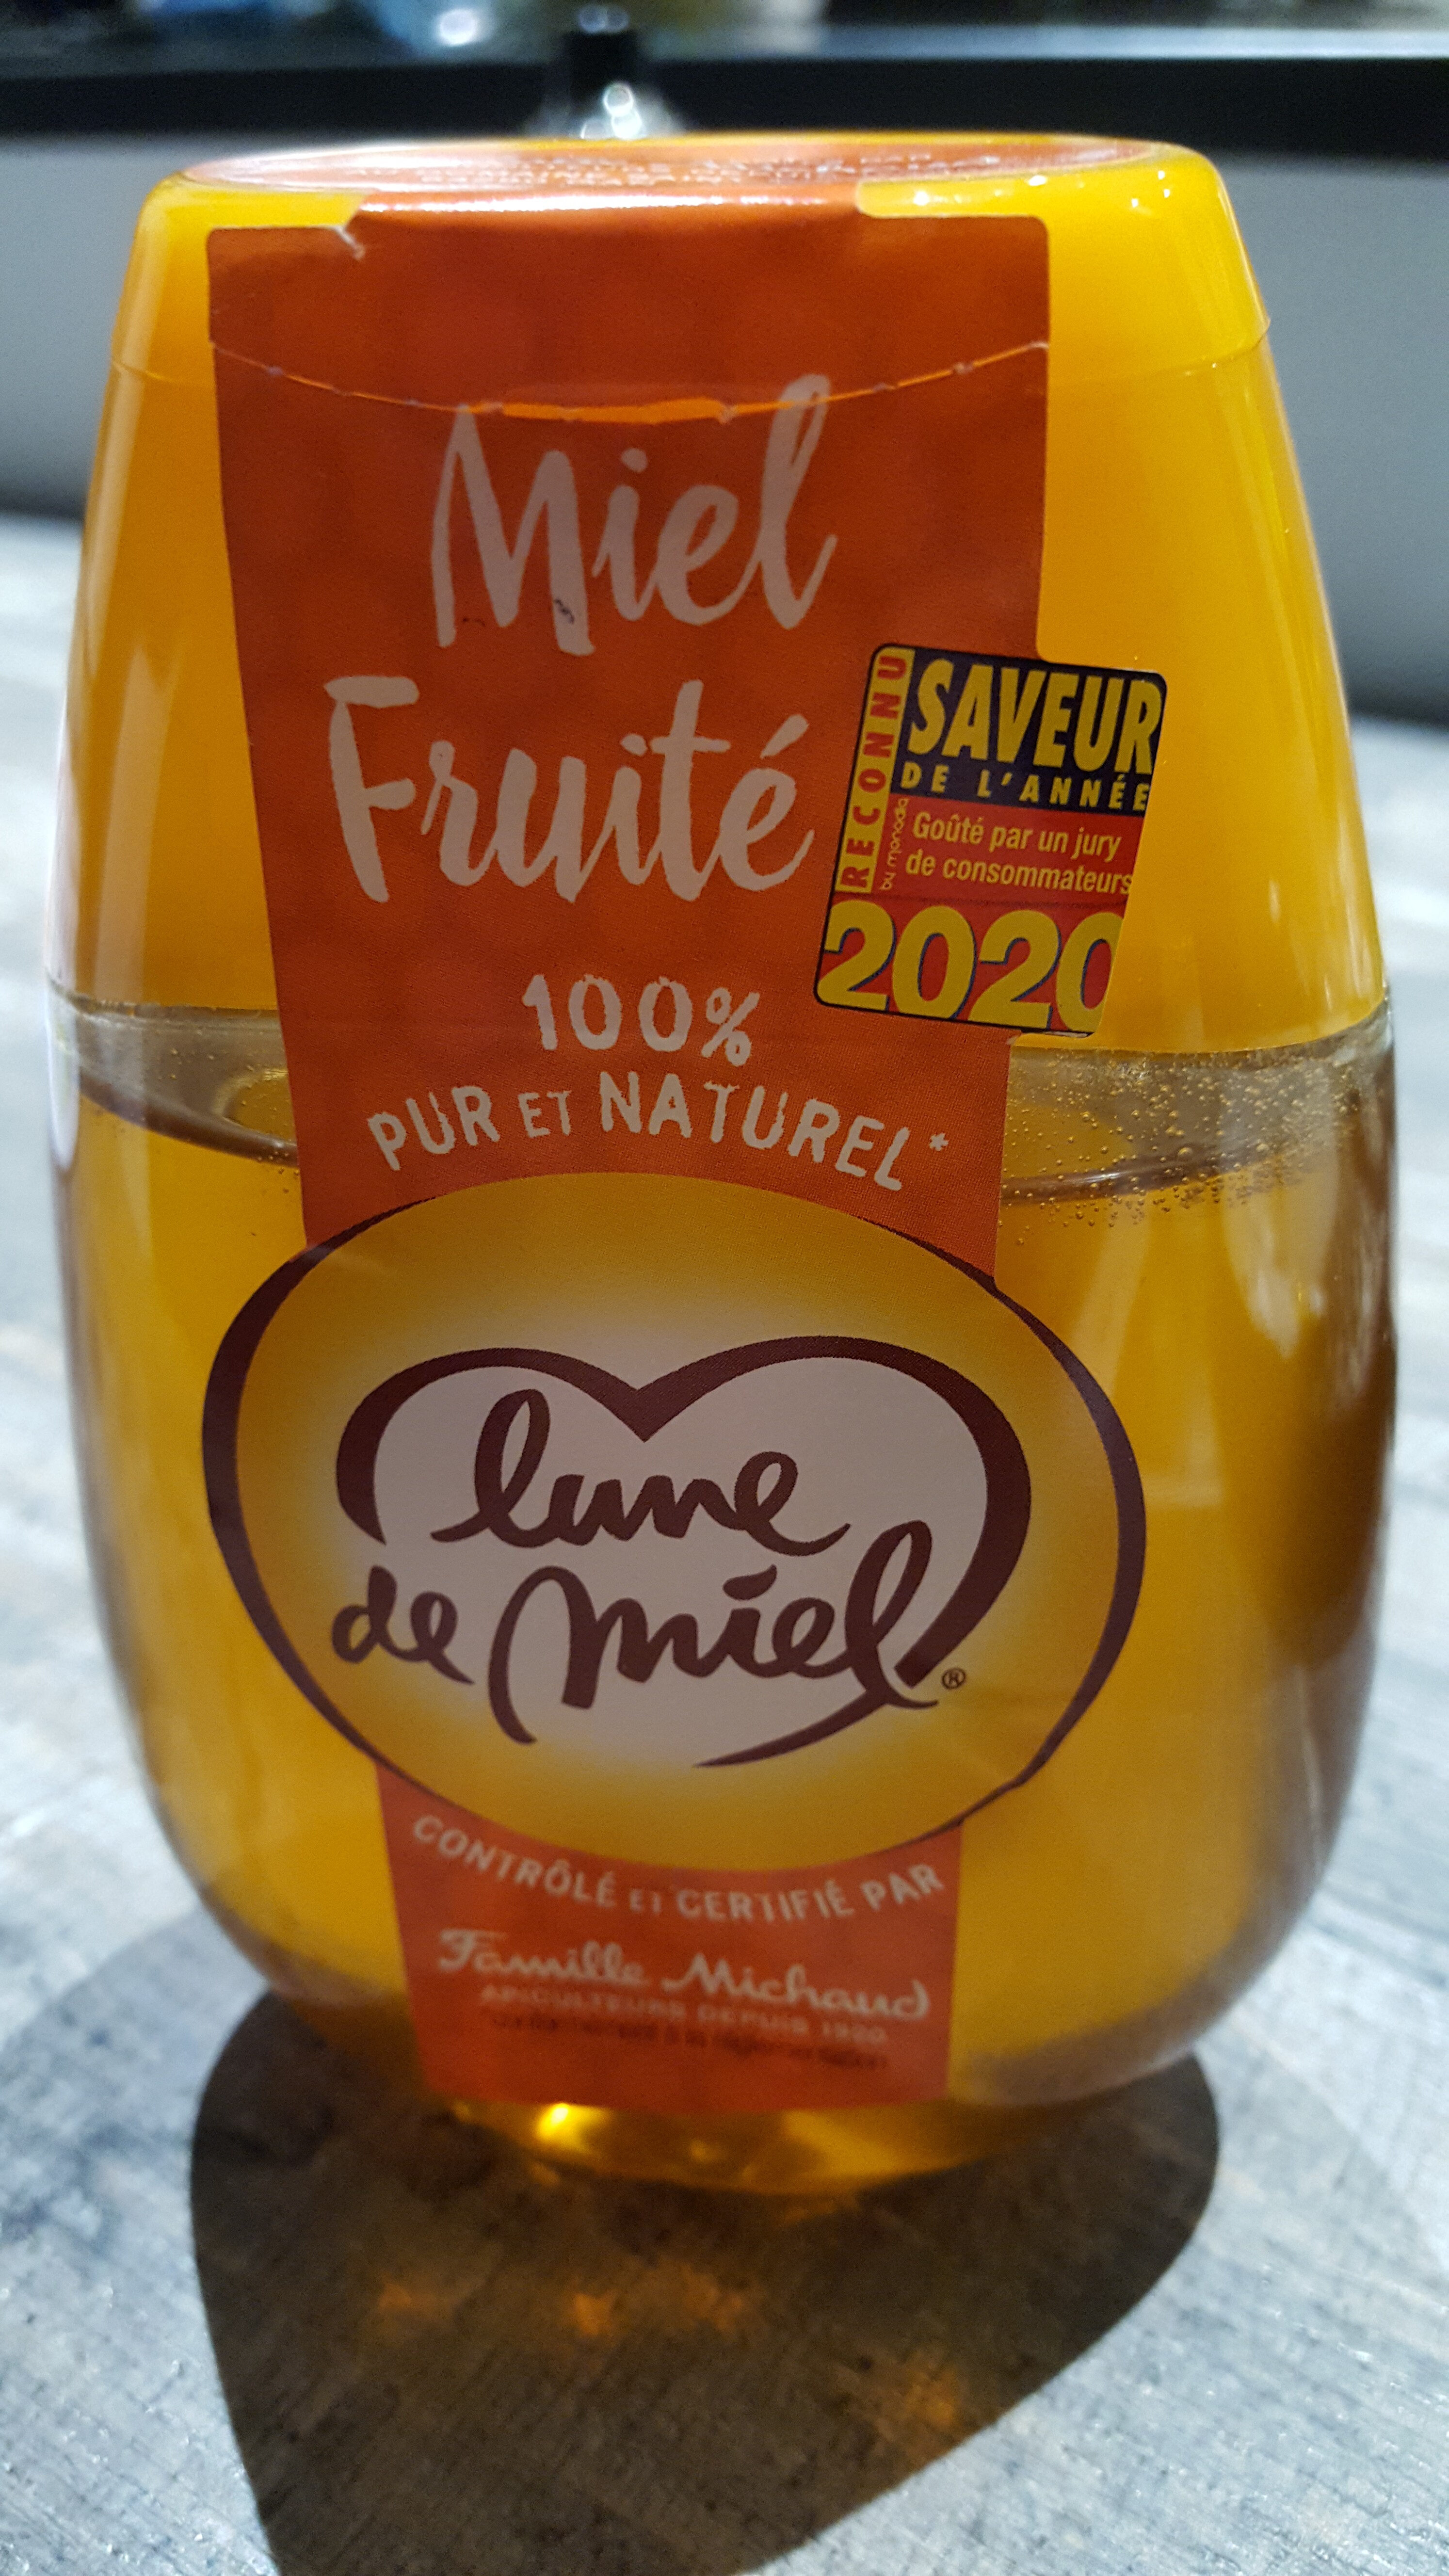 Miel fruité - Ingredients - fr